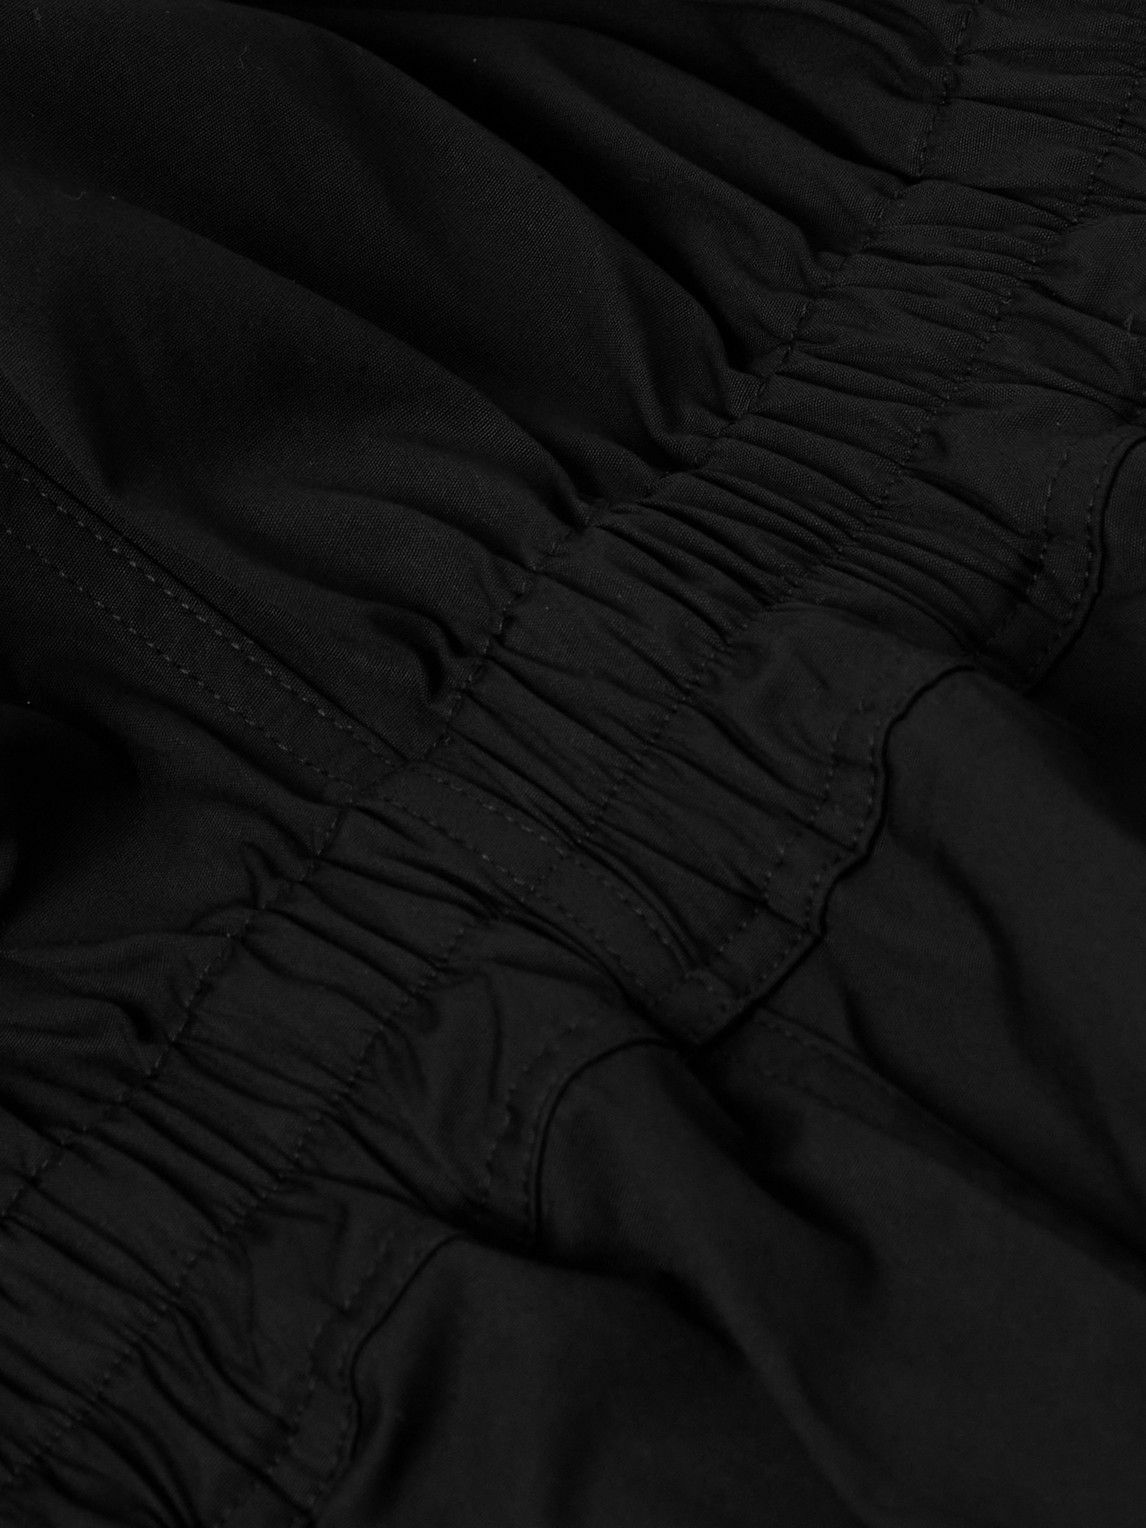 Rick Owens - Bauhaus Cotton-Blend Jumpsuit - Black